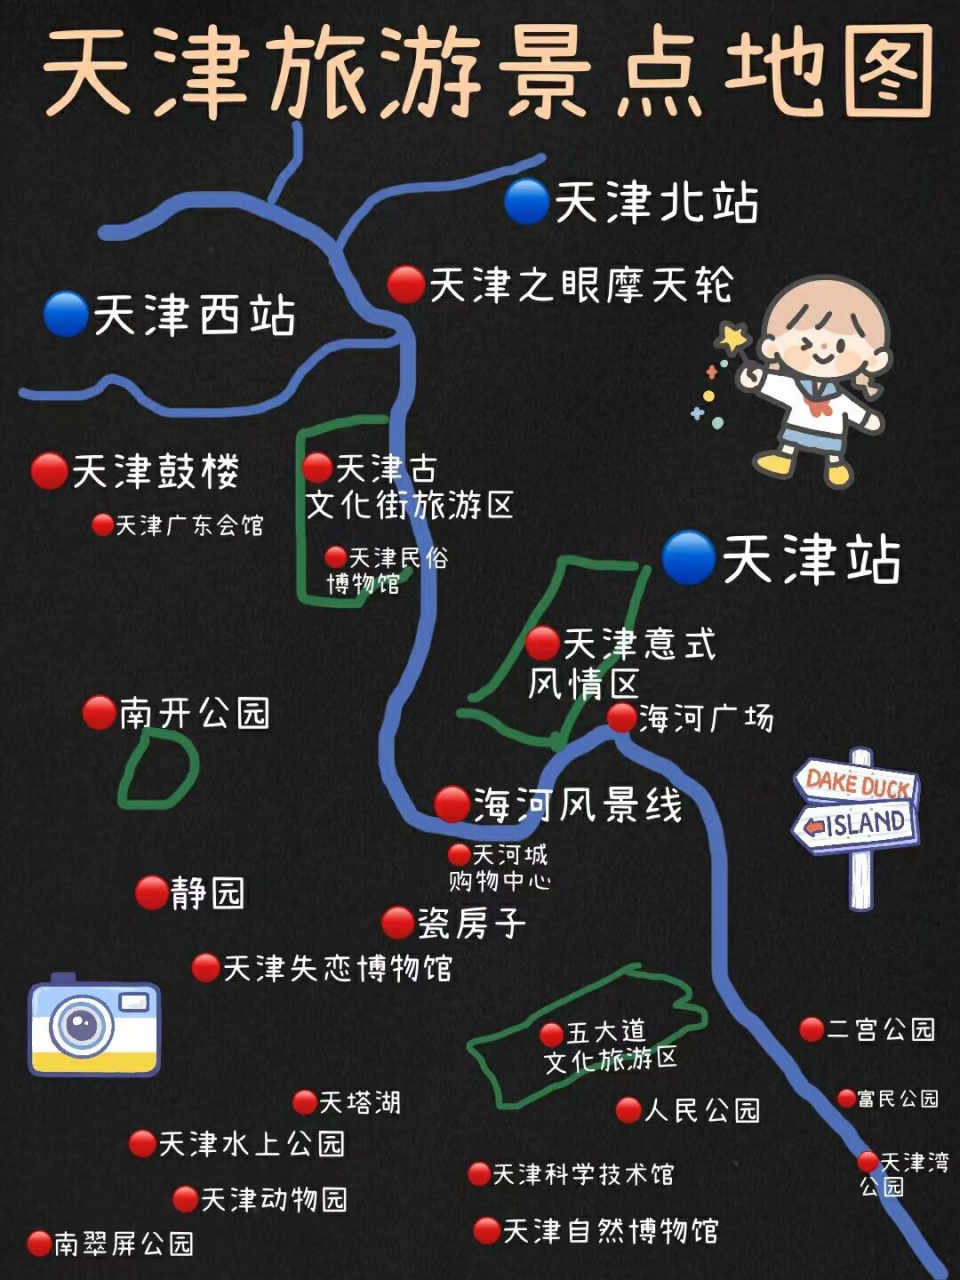 天津旅游景点地图    在北京的时候,周末去个天津就像从合肥去个南京